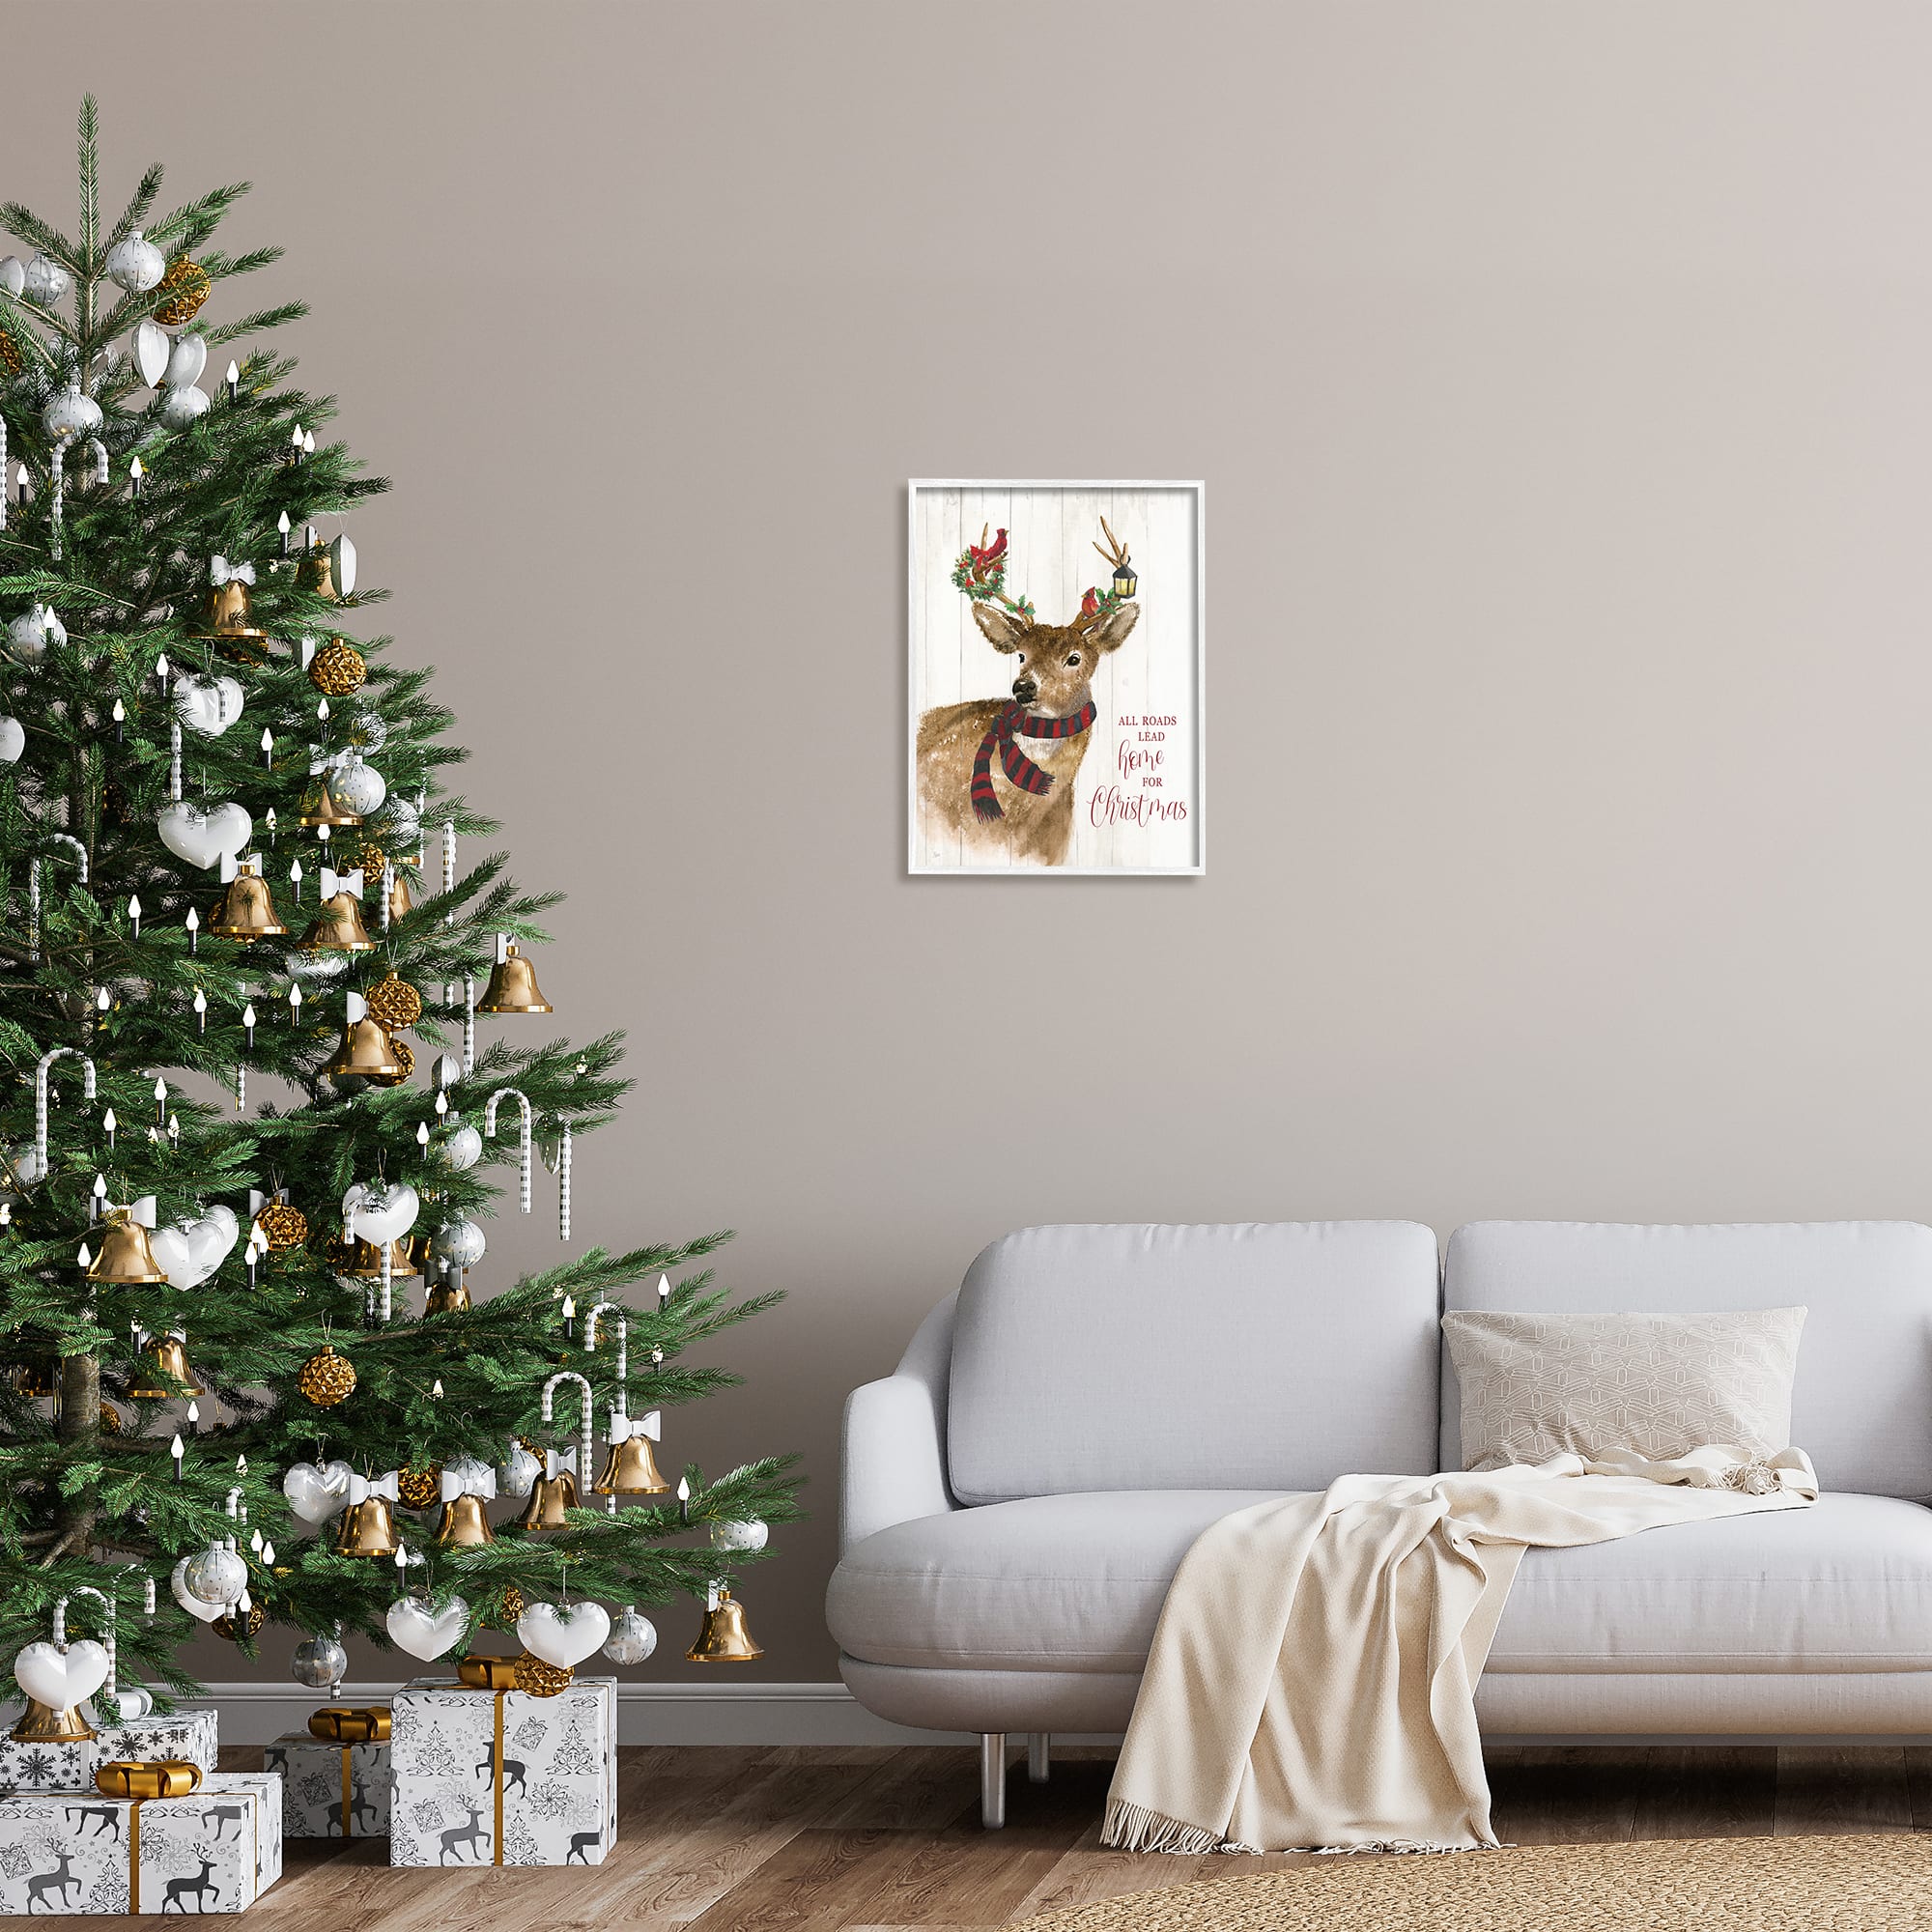 Stupell Industries All Roads Lead Home Christmas Deer Framed Giclee Art